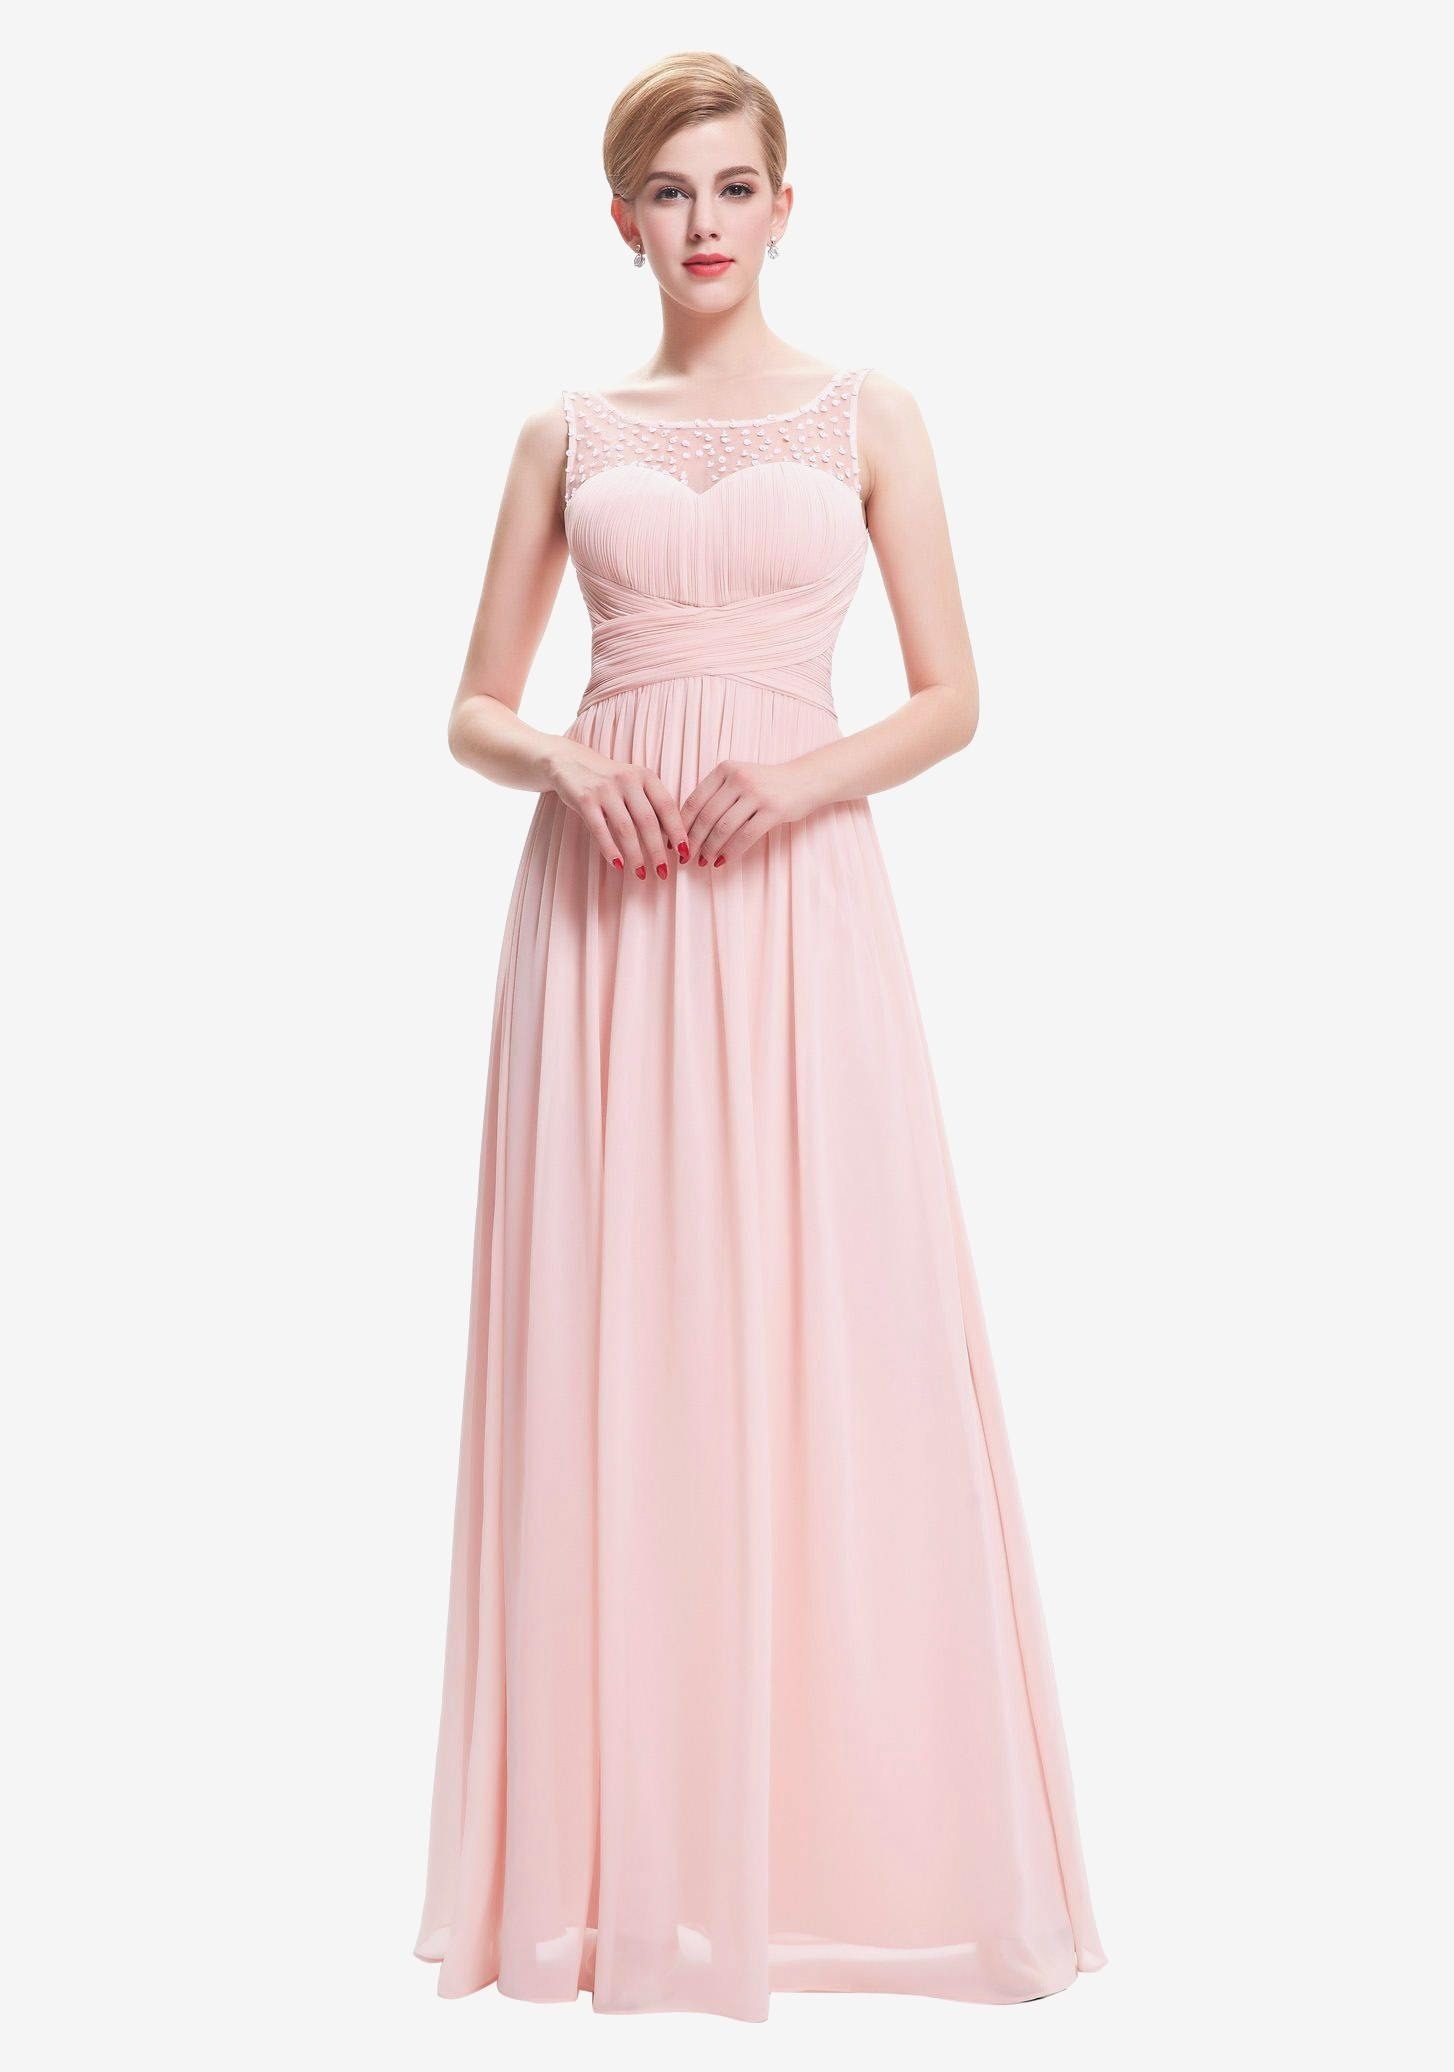 16 Ausgezeichnet Rosa Langes Kleid Mit Glitzer Stylish - Abendkleid